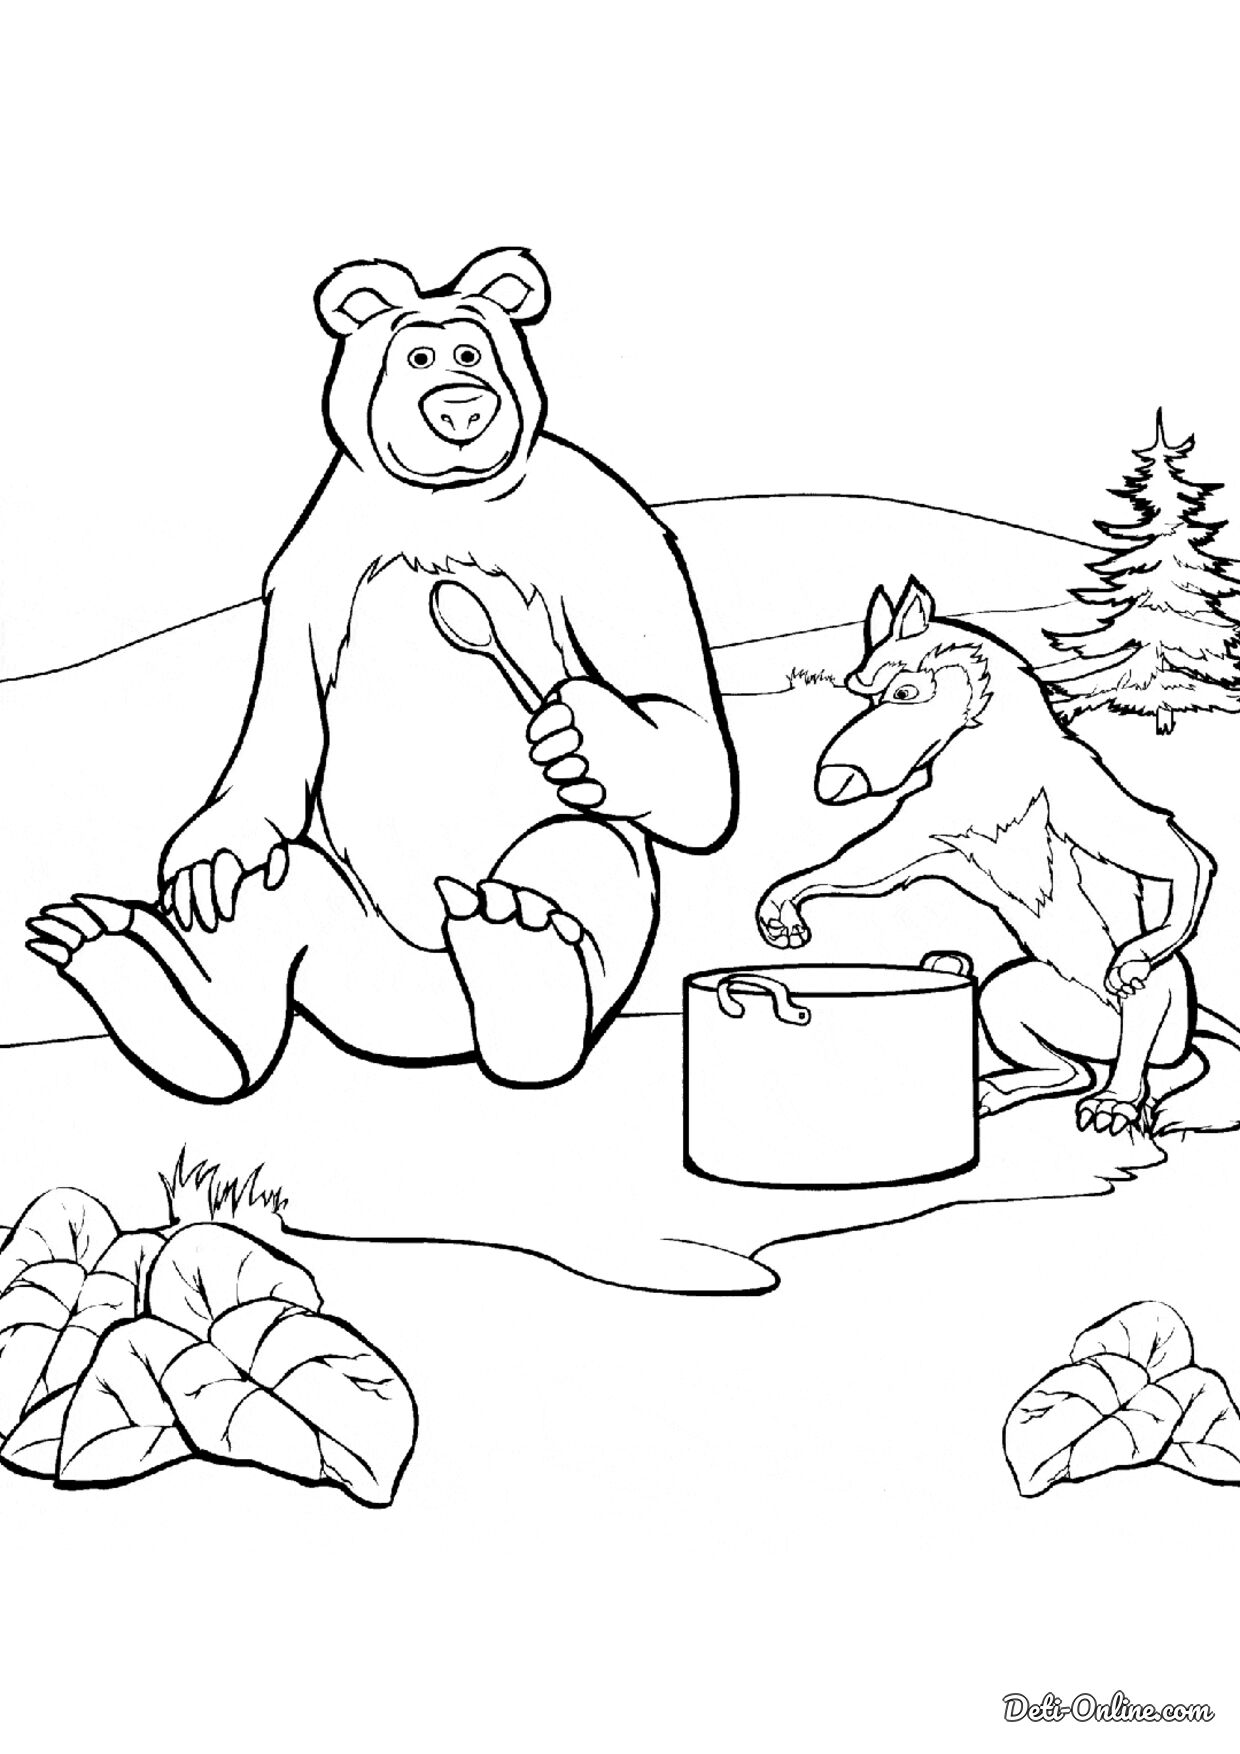 Раскраски Медведя из мультсериала Маша и медведь